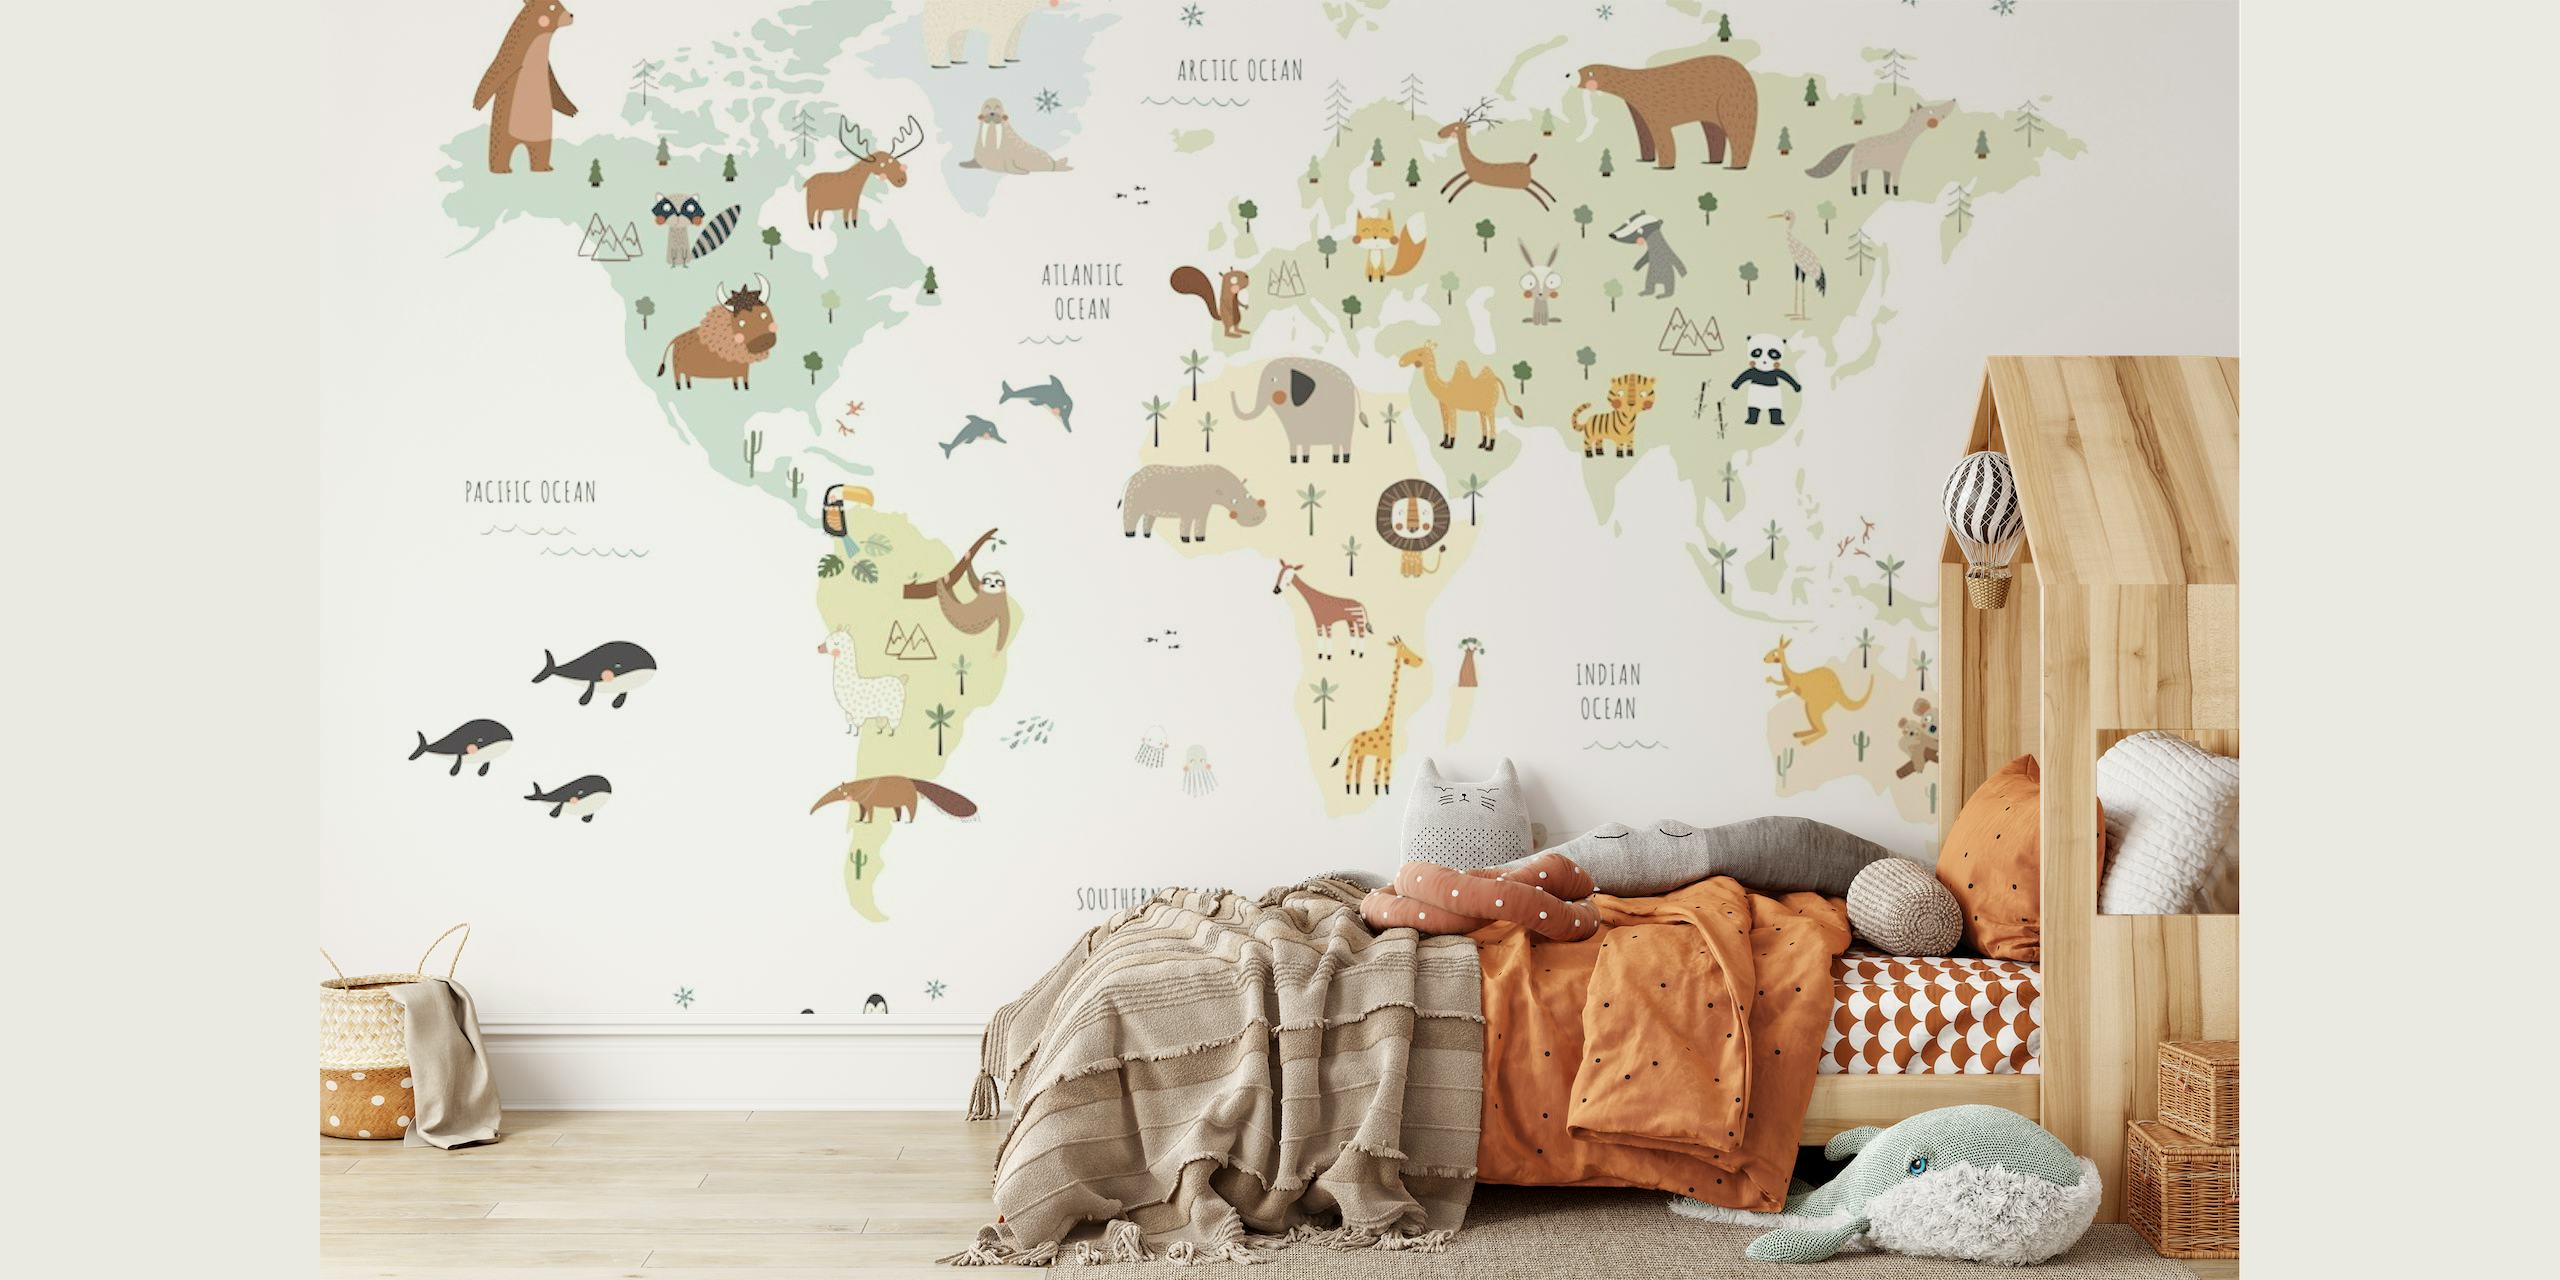 Fototapeta Ilustrovaná mapa světa s barevnými zvířaty představujícími různé regiony